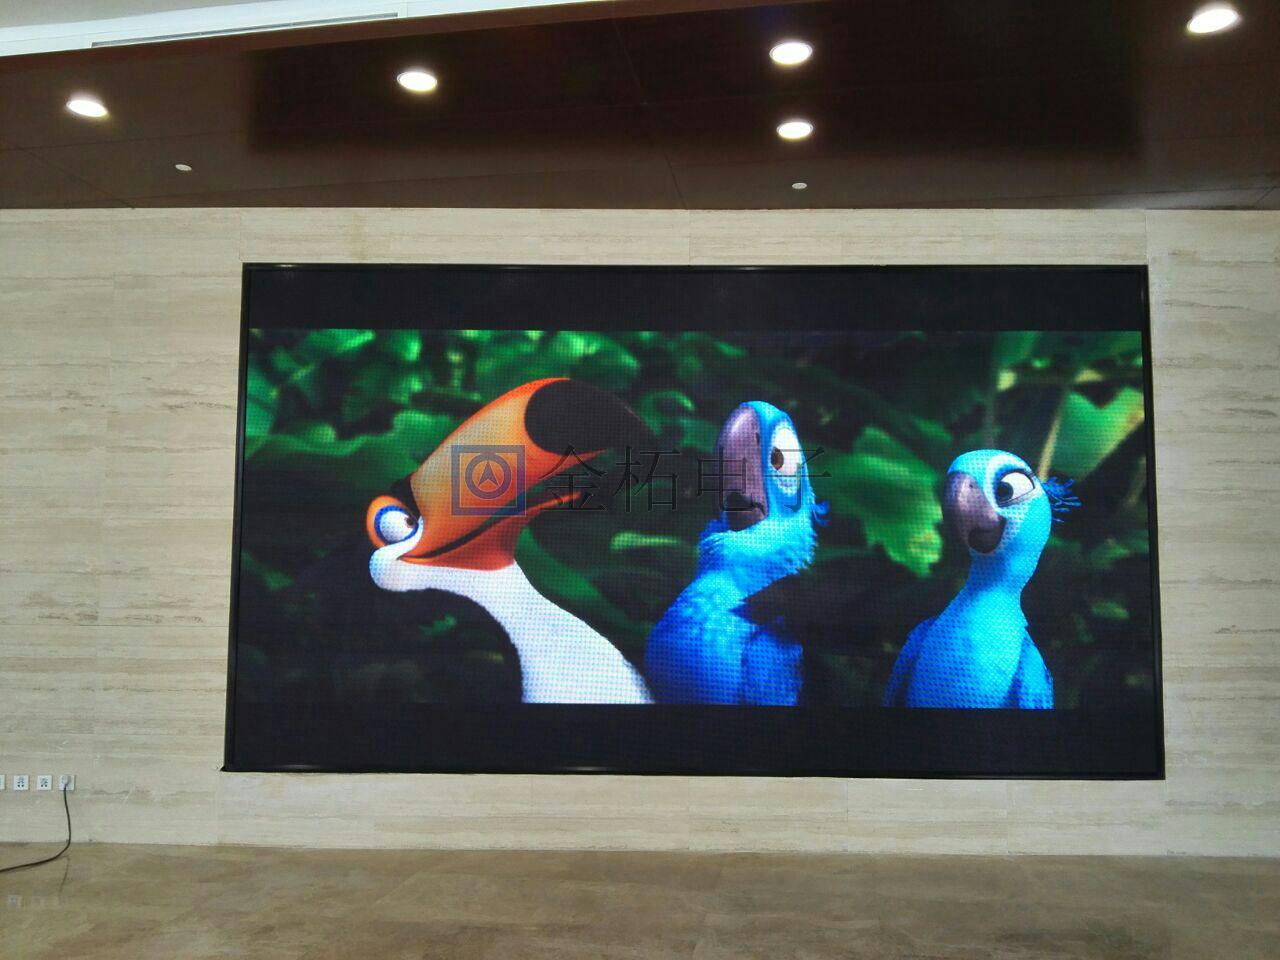 天津滨海新区公安局出入境服务大厅P4全彩显示屏